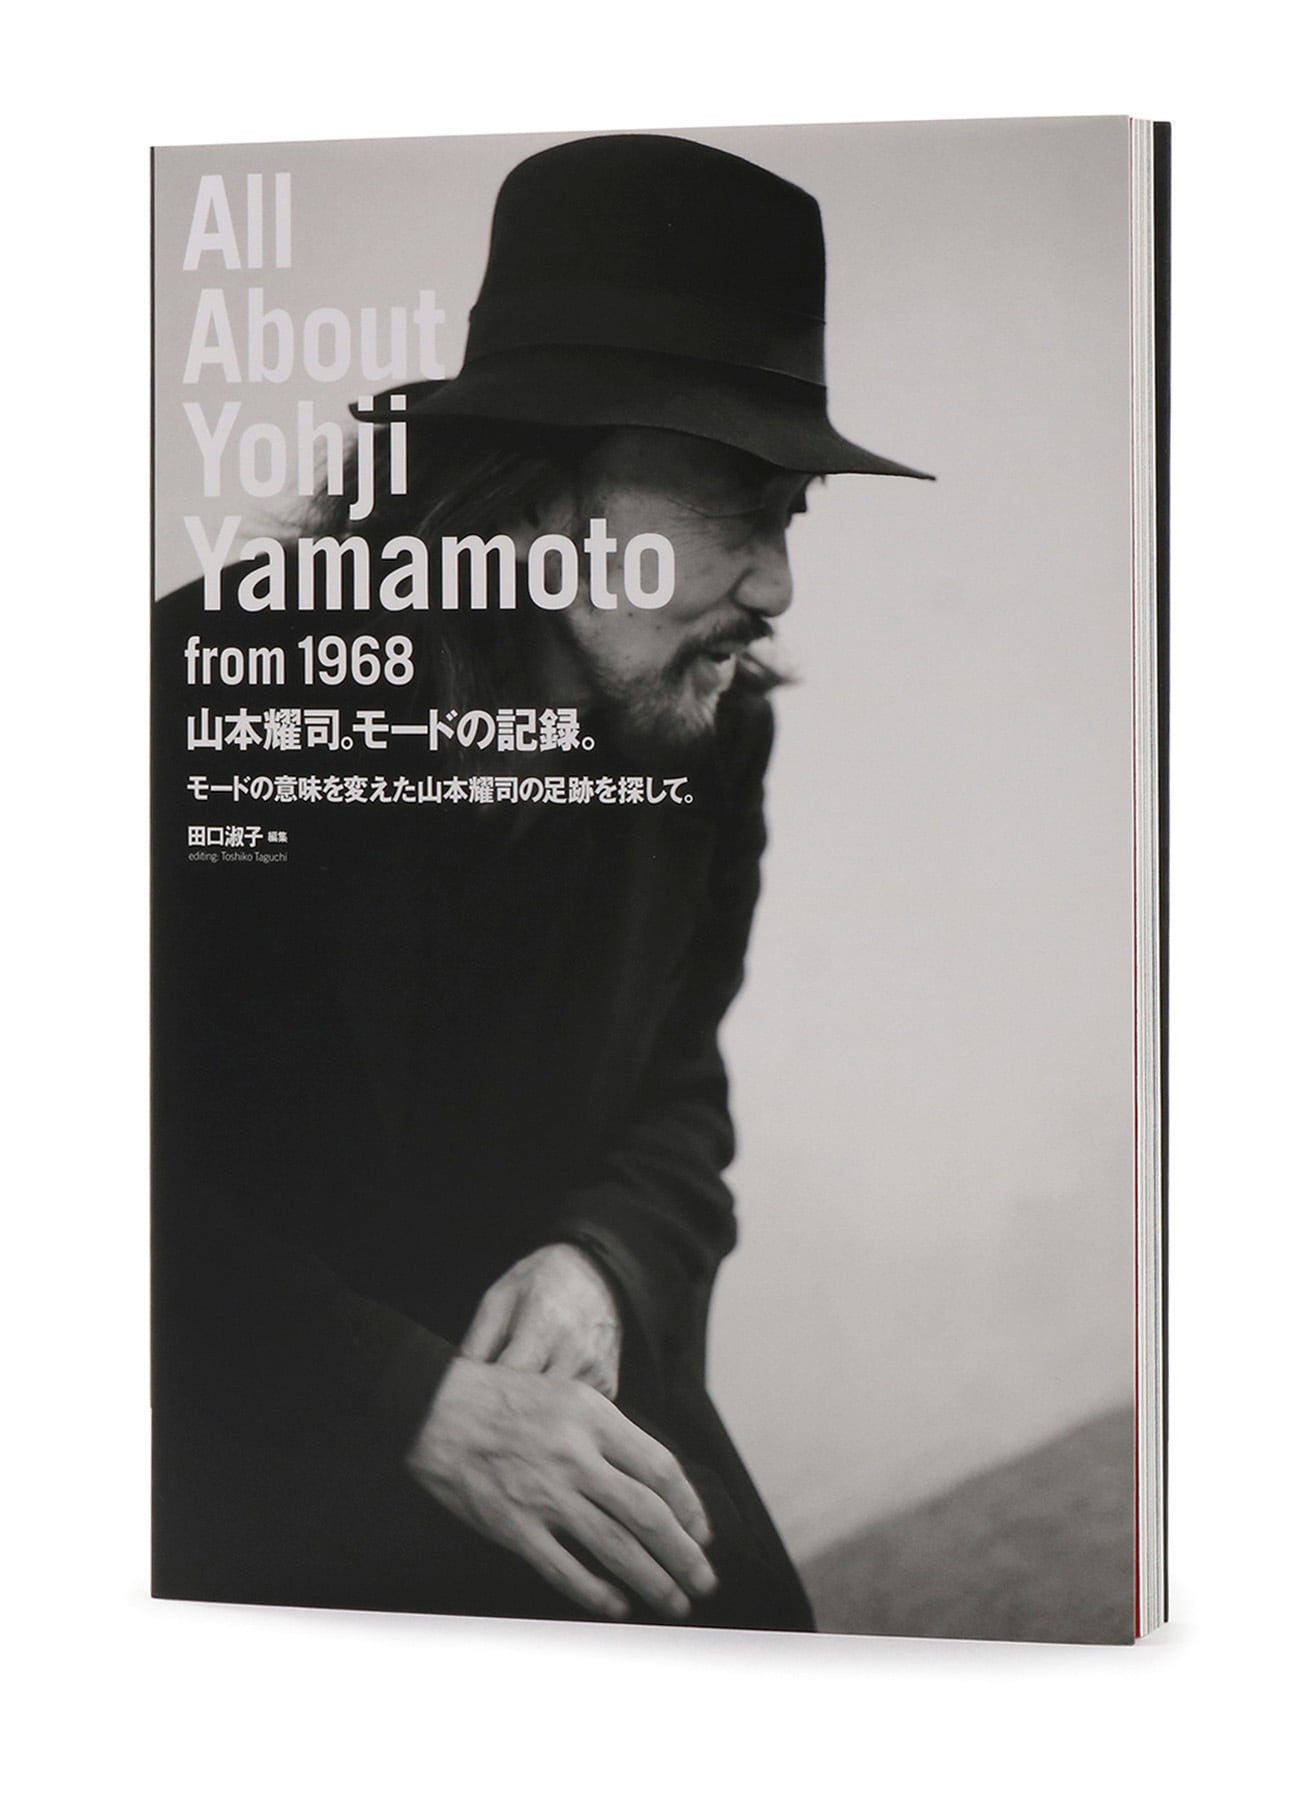 All About Yohji Yamamoto